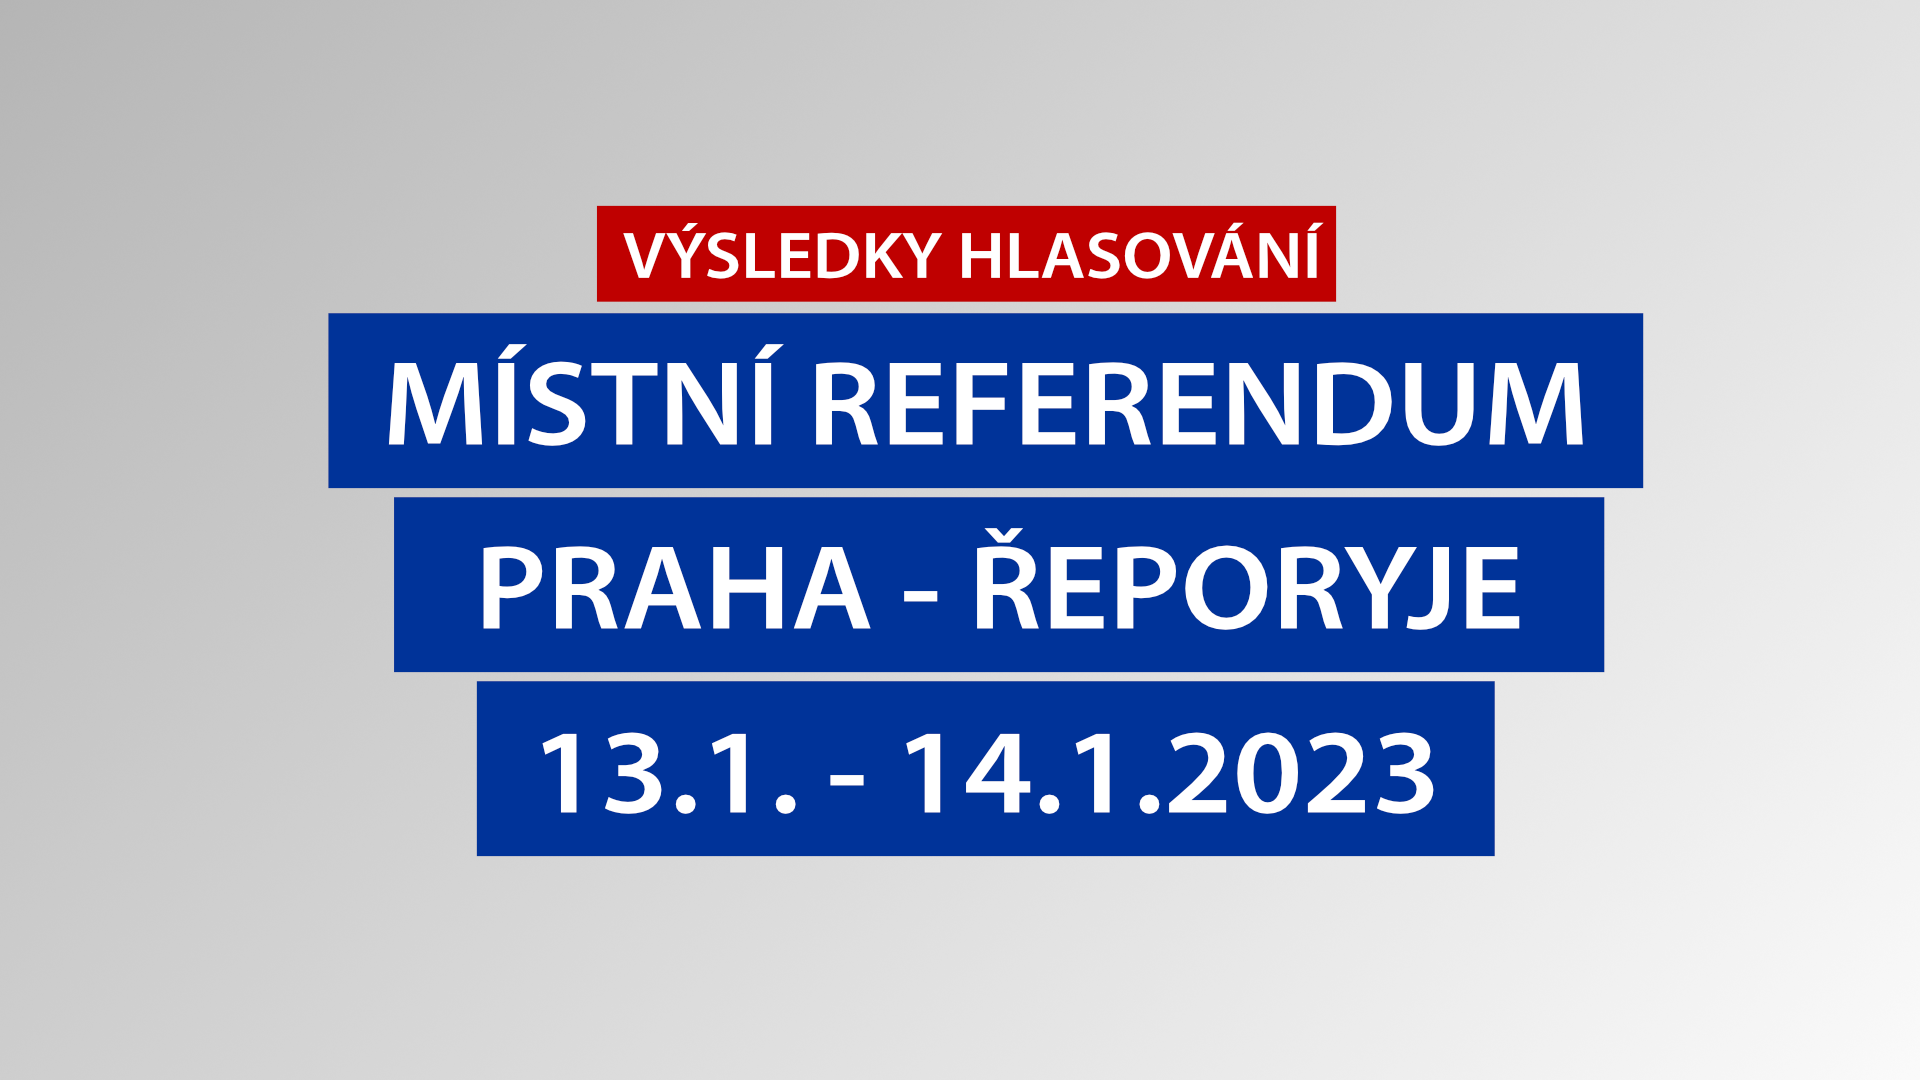 Výsledky hlasování v místním referendu na území MČ Praha - Řeporyje